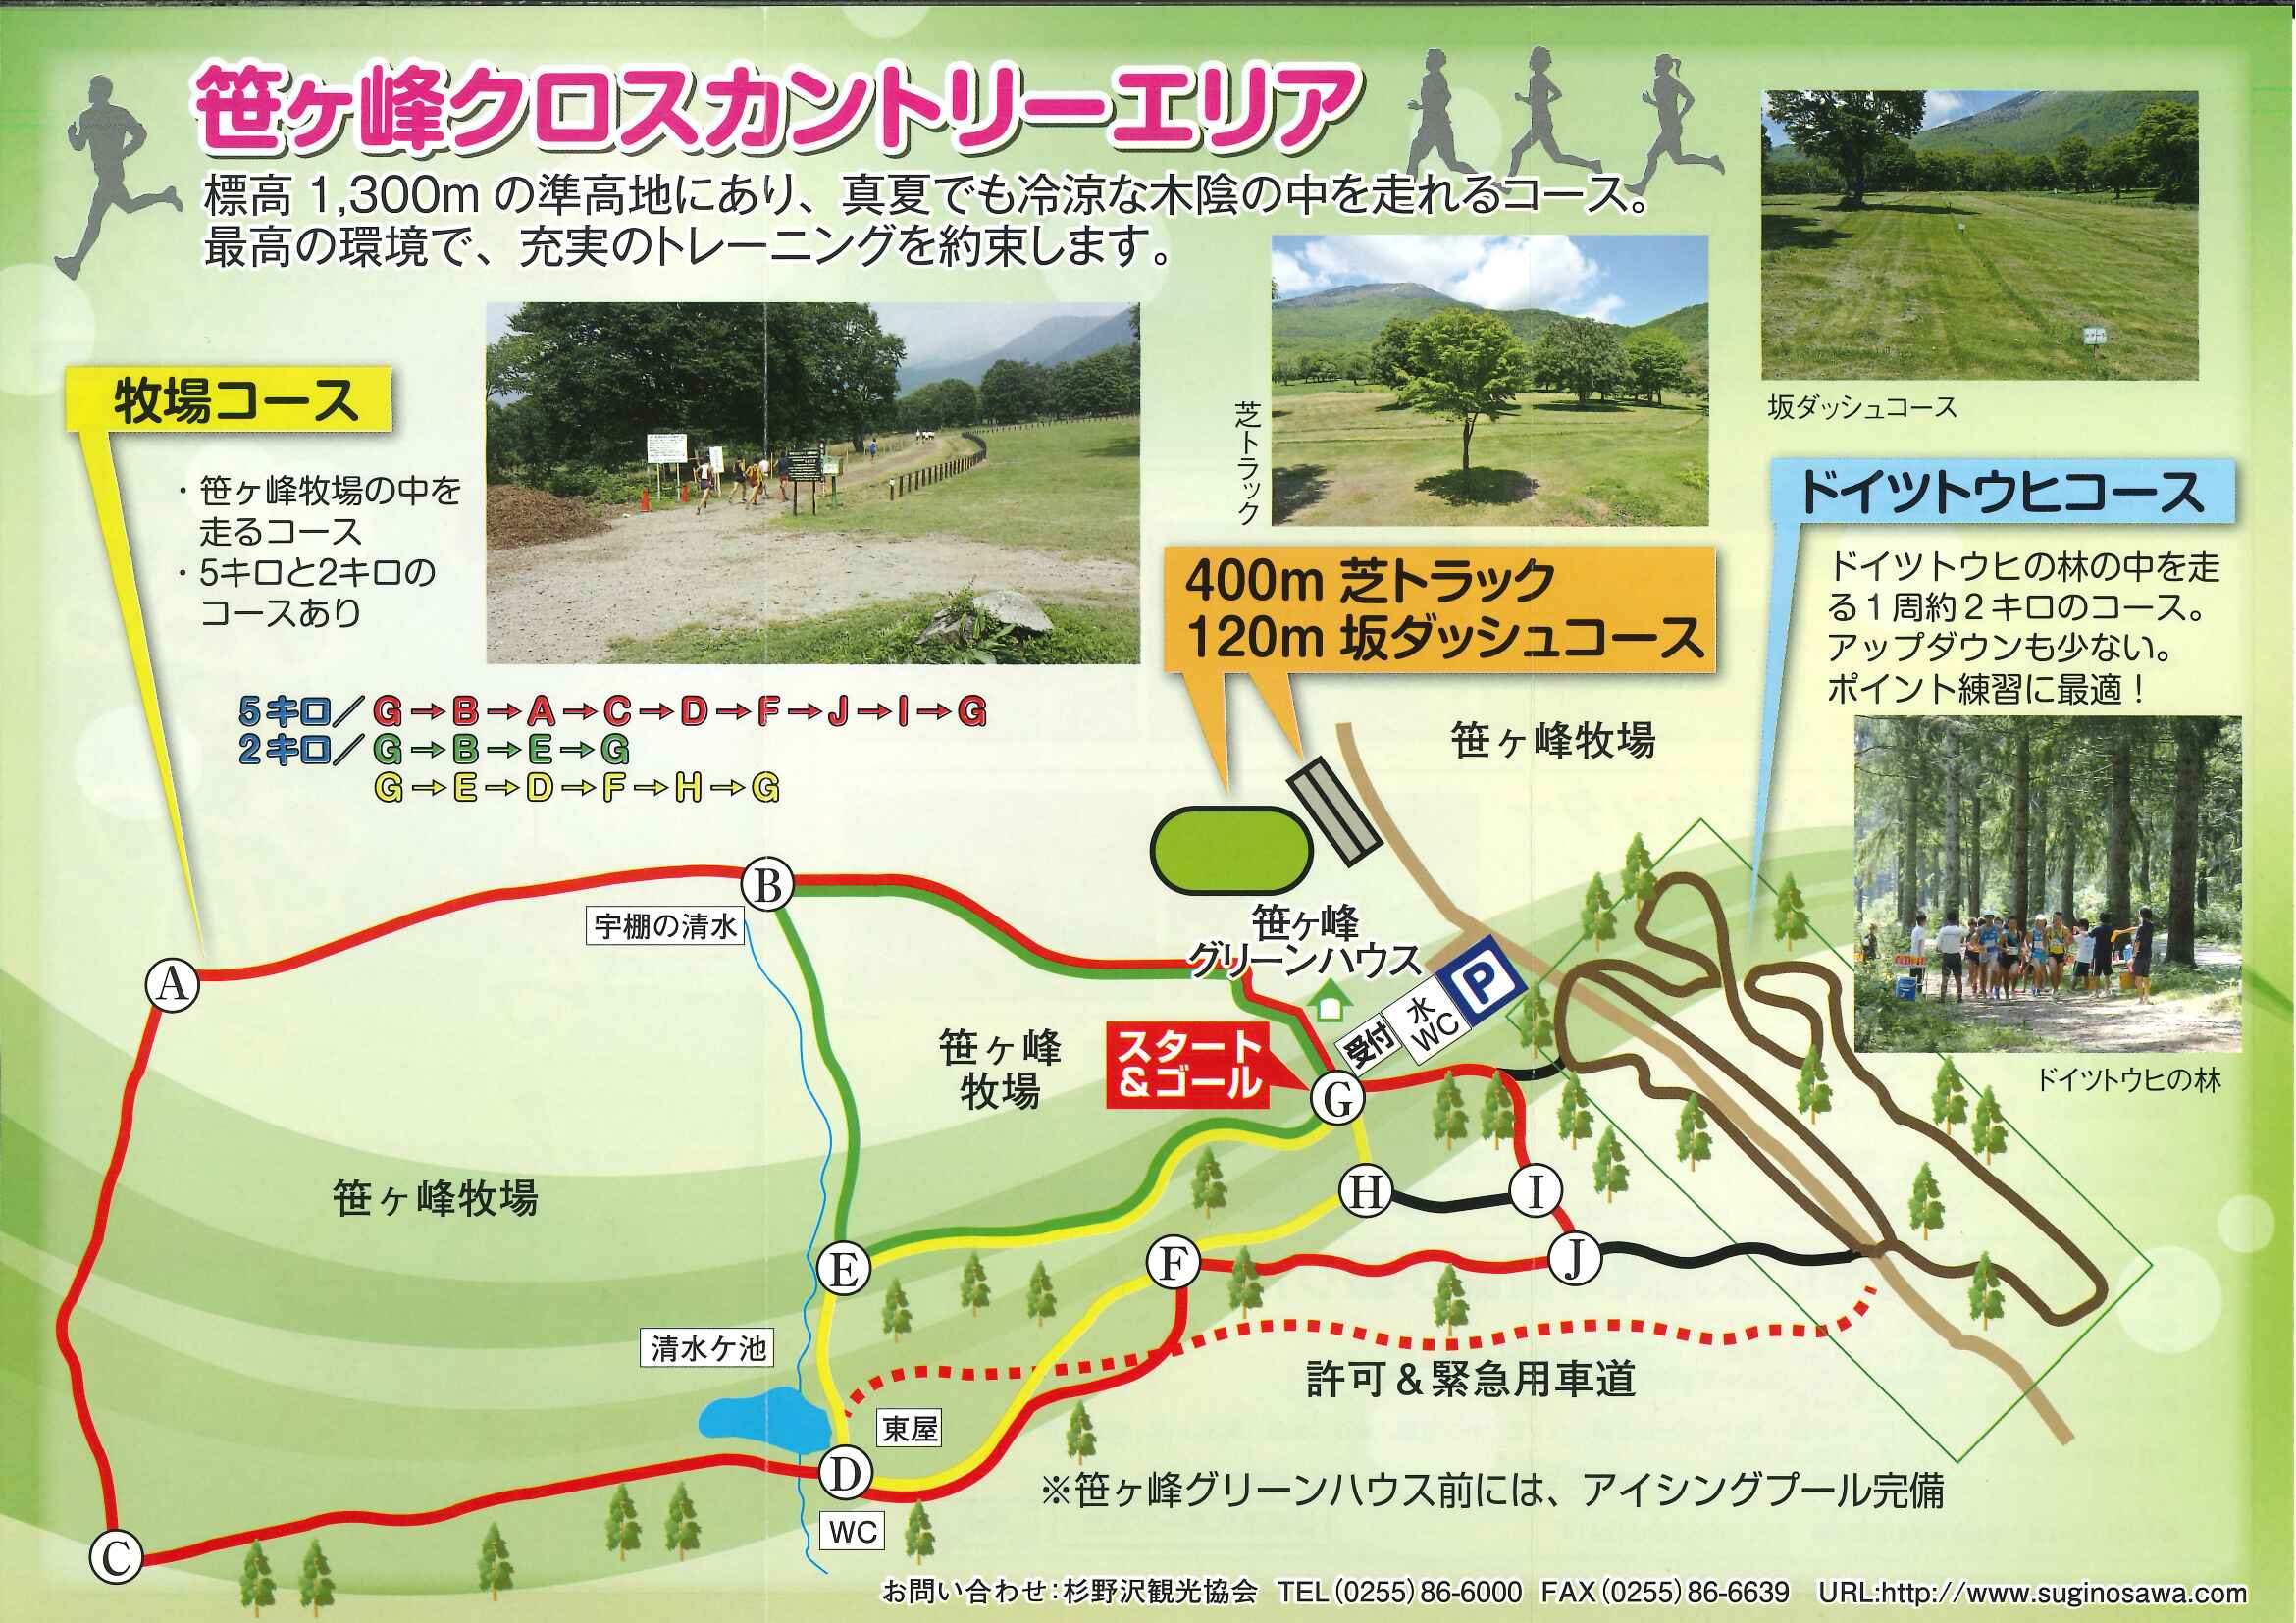 笹ヶ峰ランニングコースの利用方法について - 杉野沢観光協会